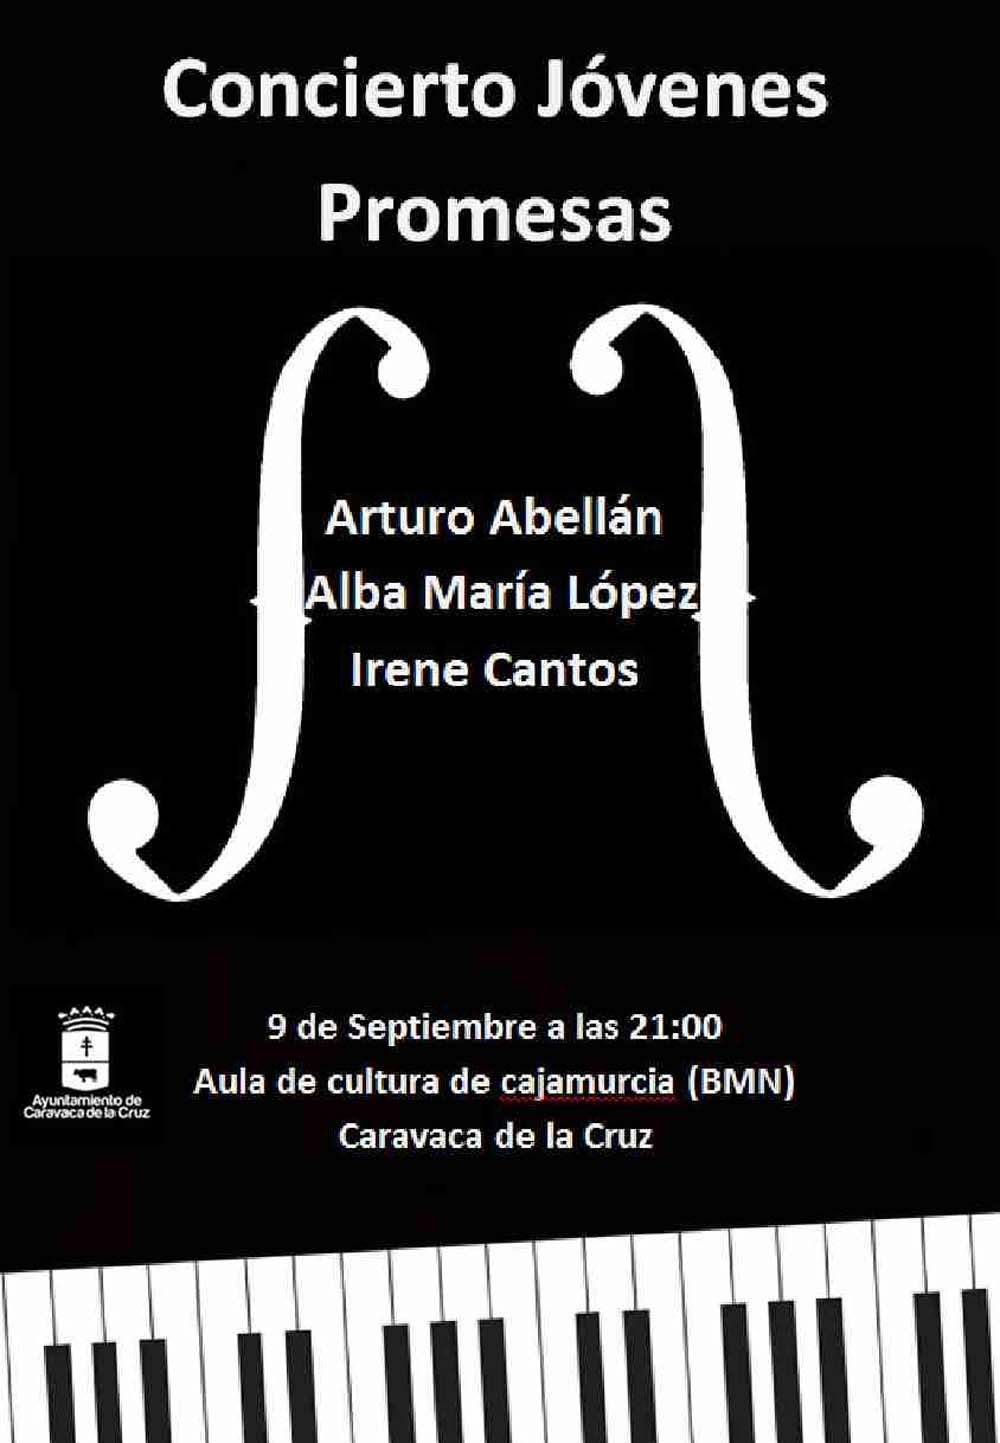 Concierto hoy en Caravaca de Jóvenes Promesas, con Arturo Abellán, Alba María López e Irene Cantos